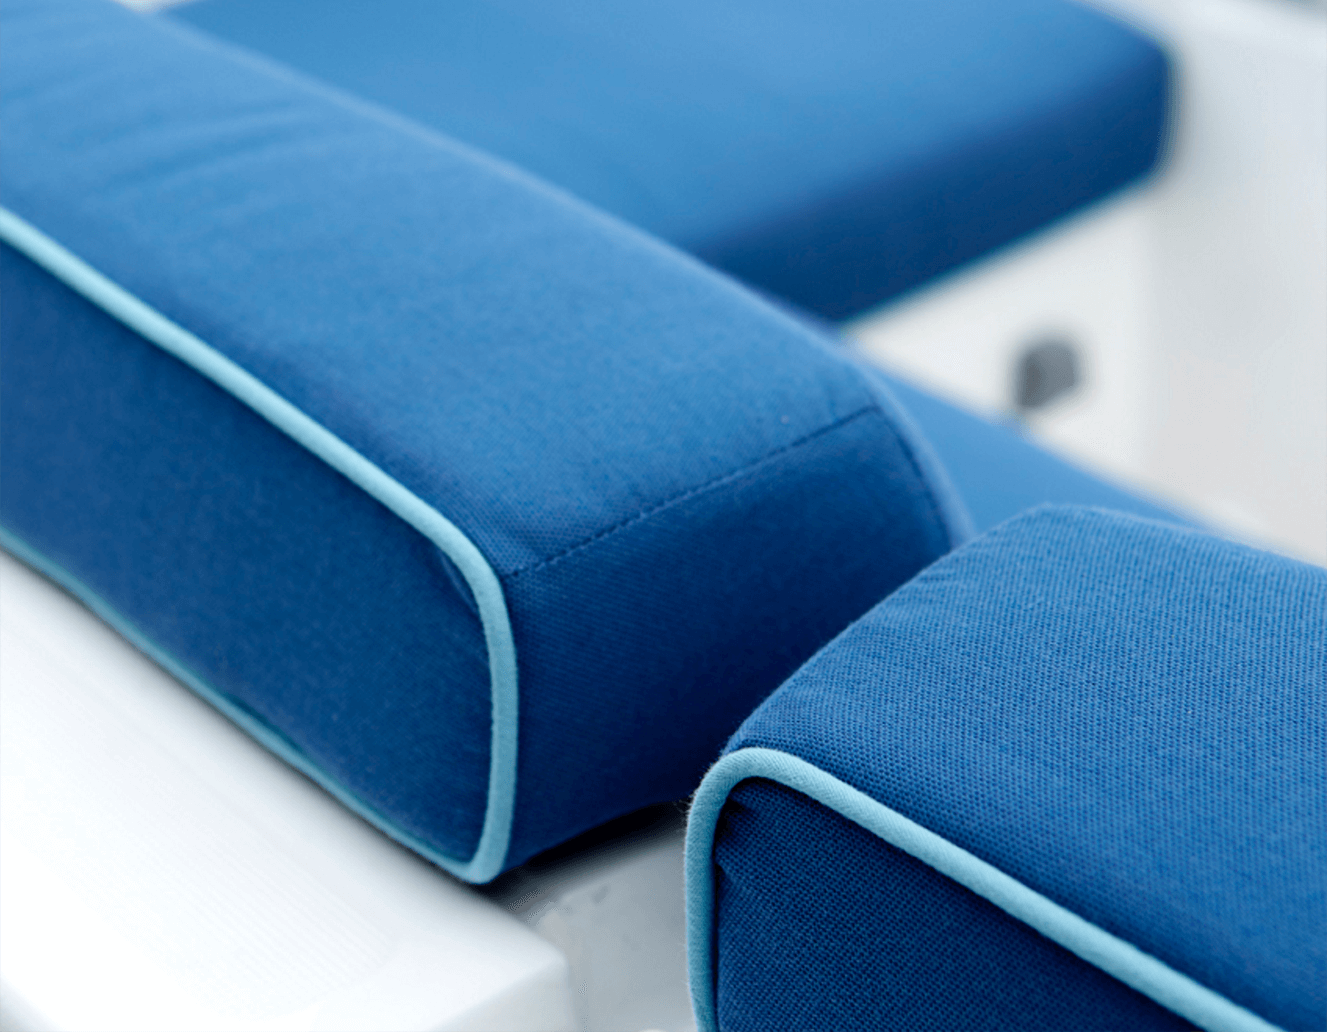 Particolare di cuscini blu con bordatura azzurra sui cuscini dei sedili di una barca